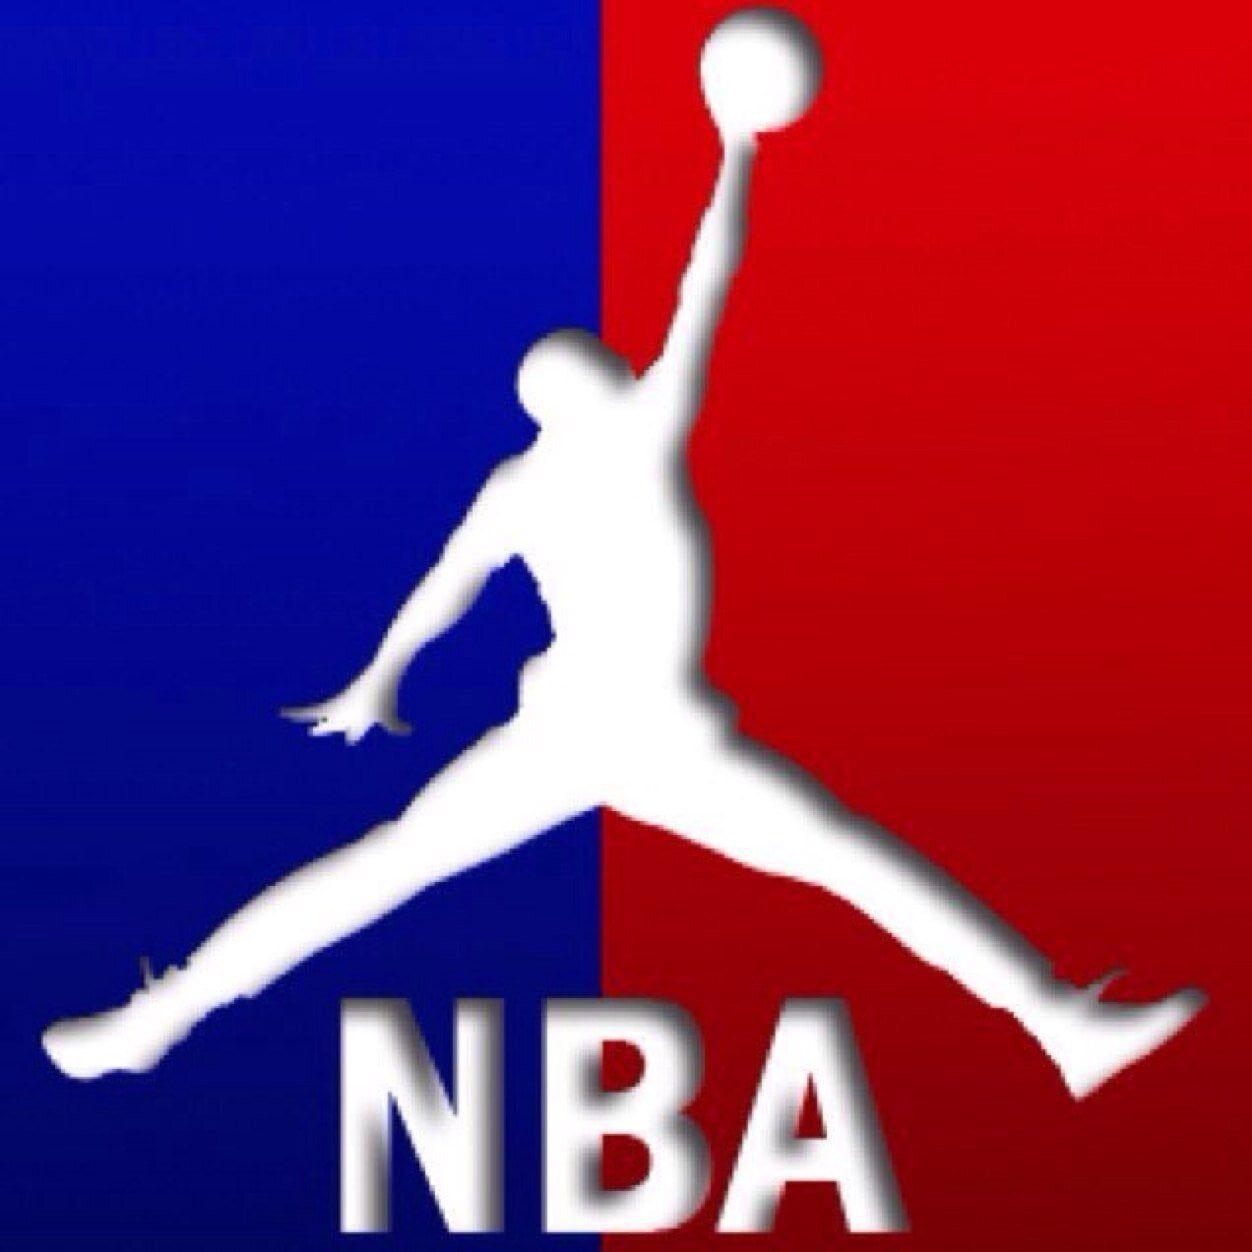 Air Jordan Basketball Logo - Michael Jordan Silhouette Poster at GetDrawings.com | Free for ...